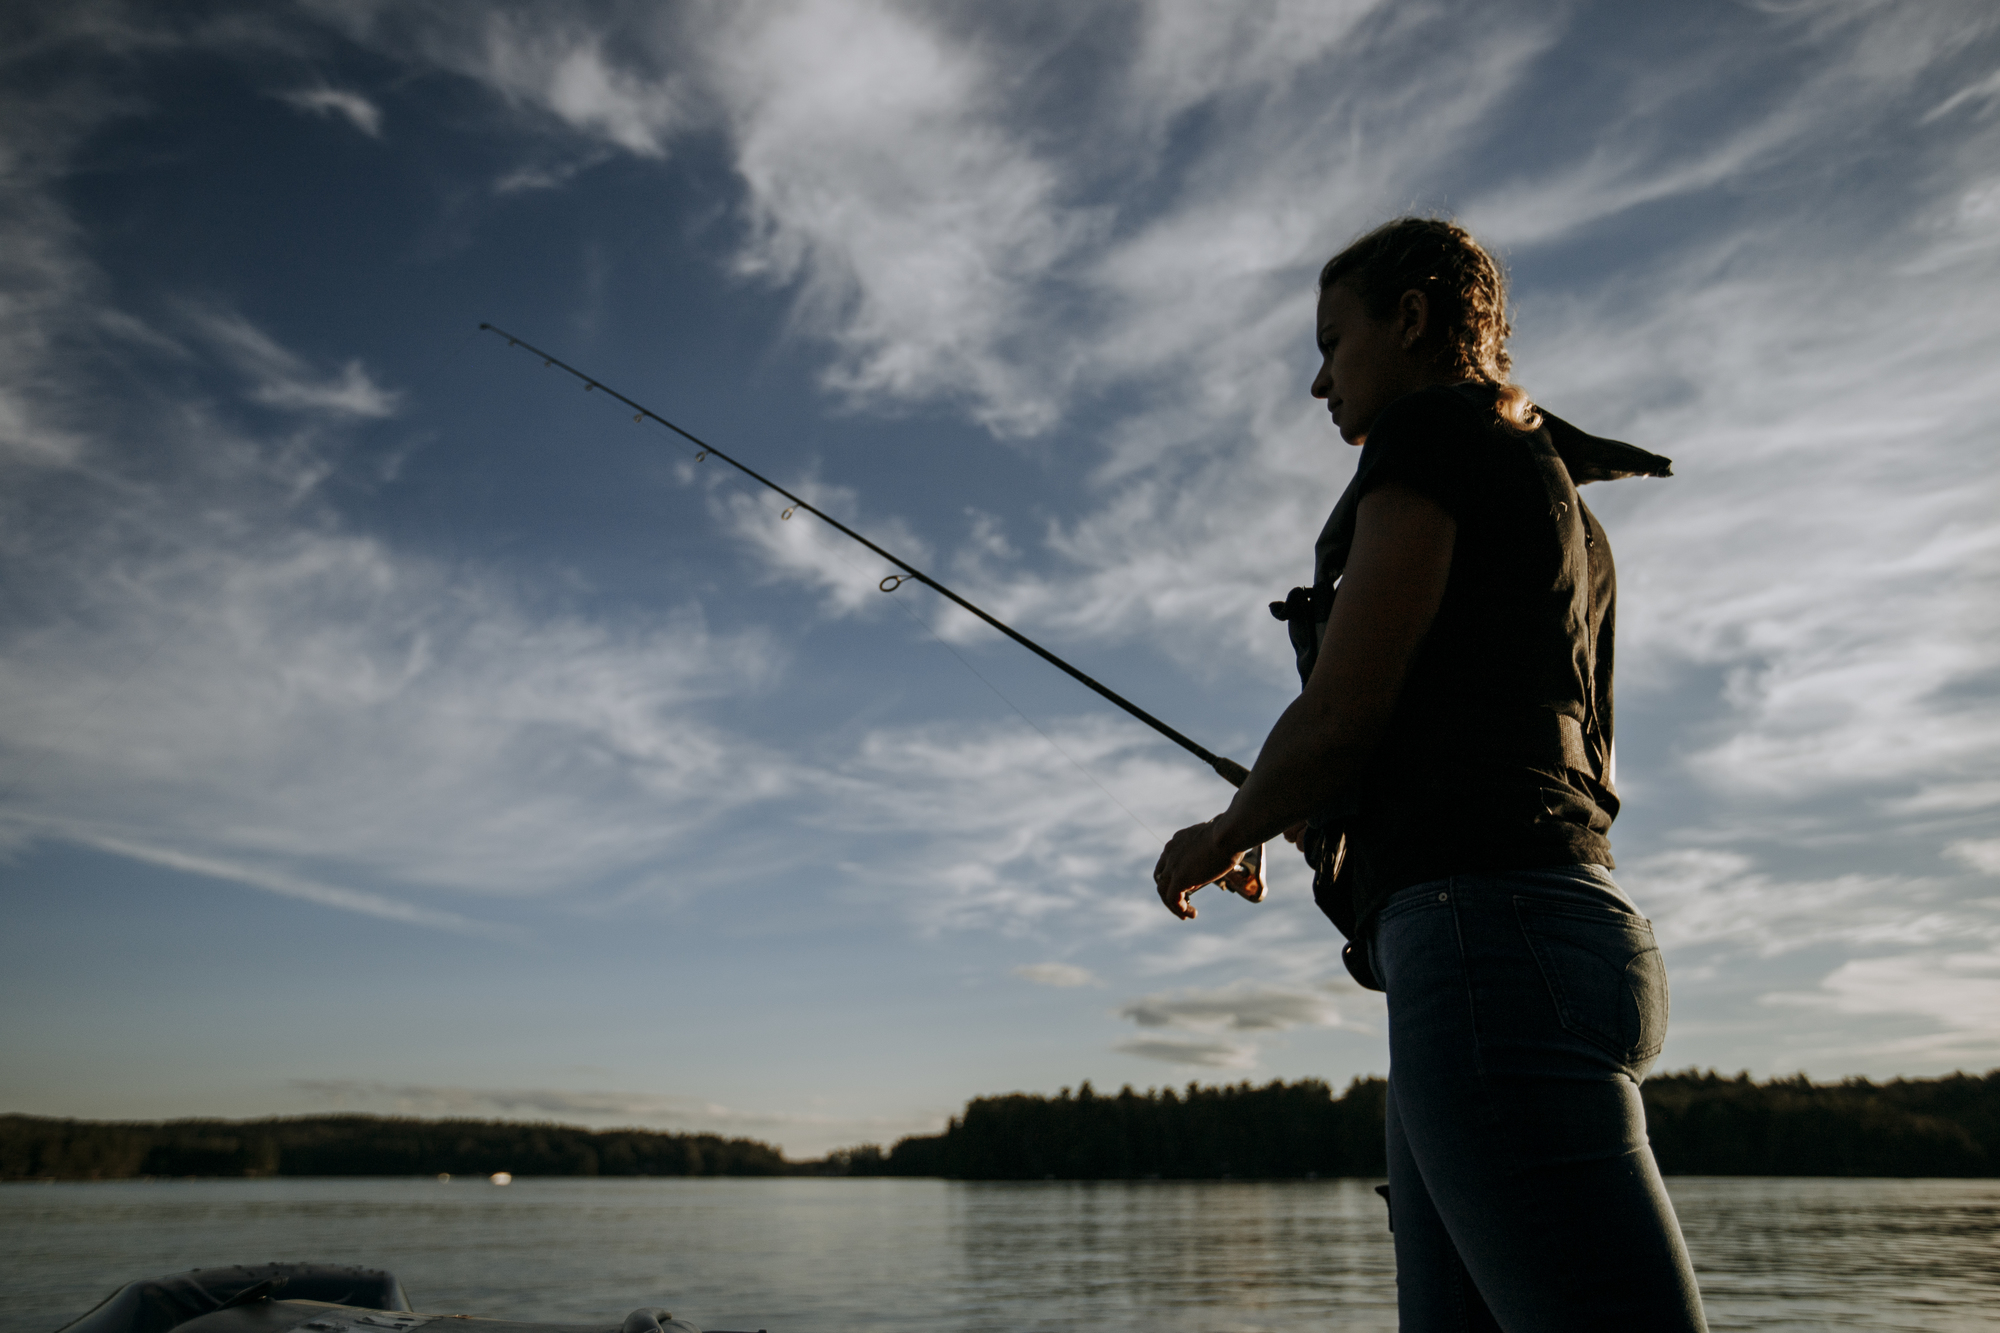 🎣Free Fishing Weekend is this weekend!